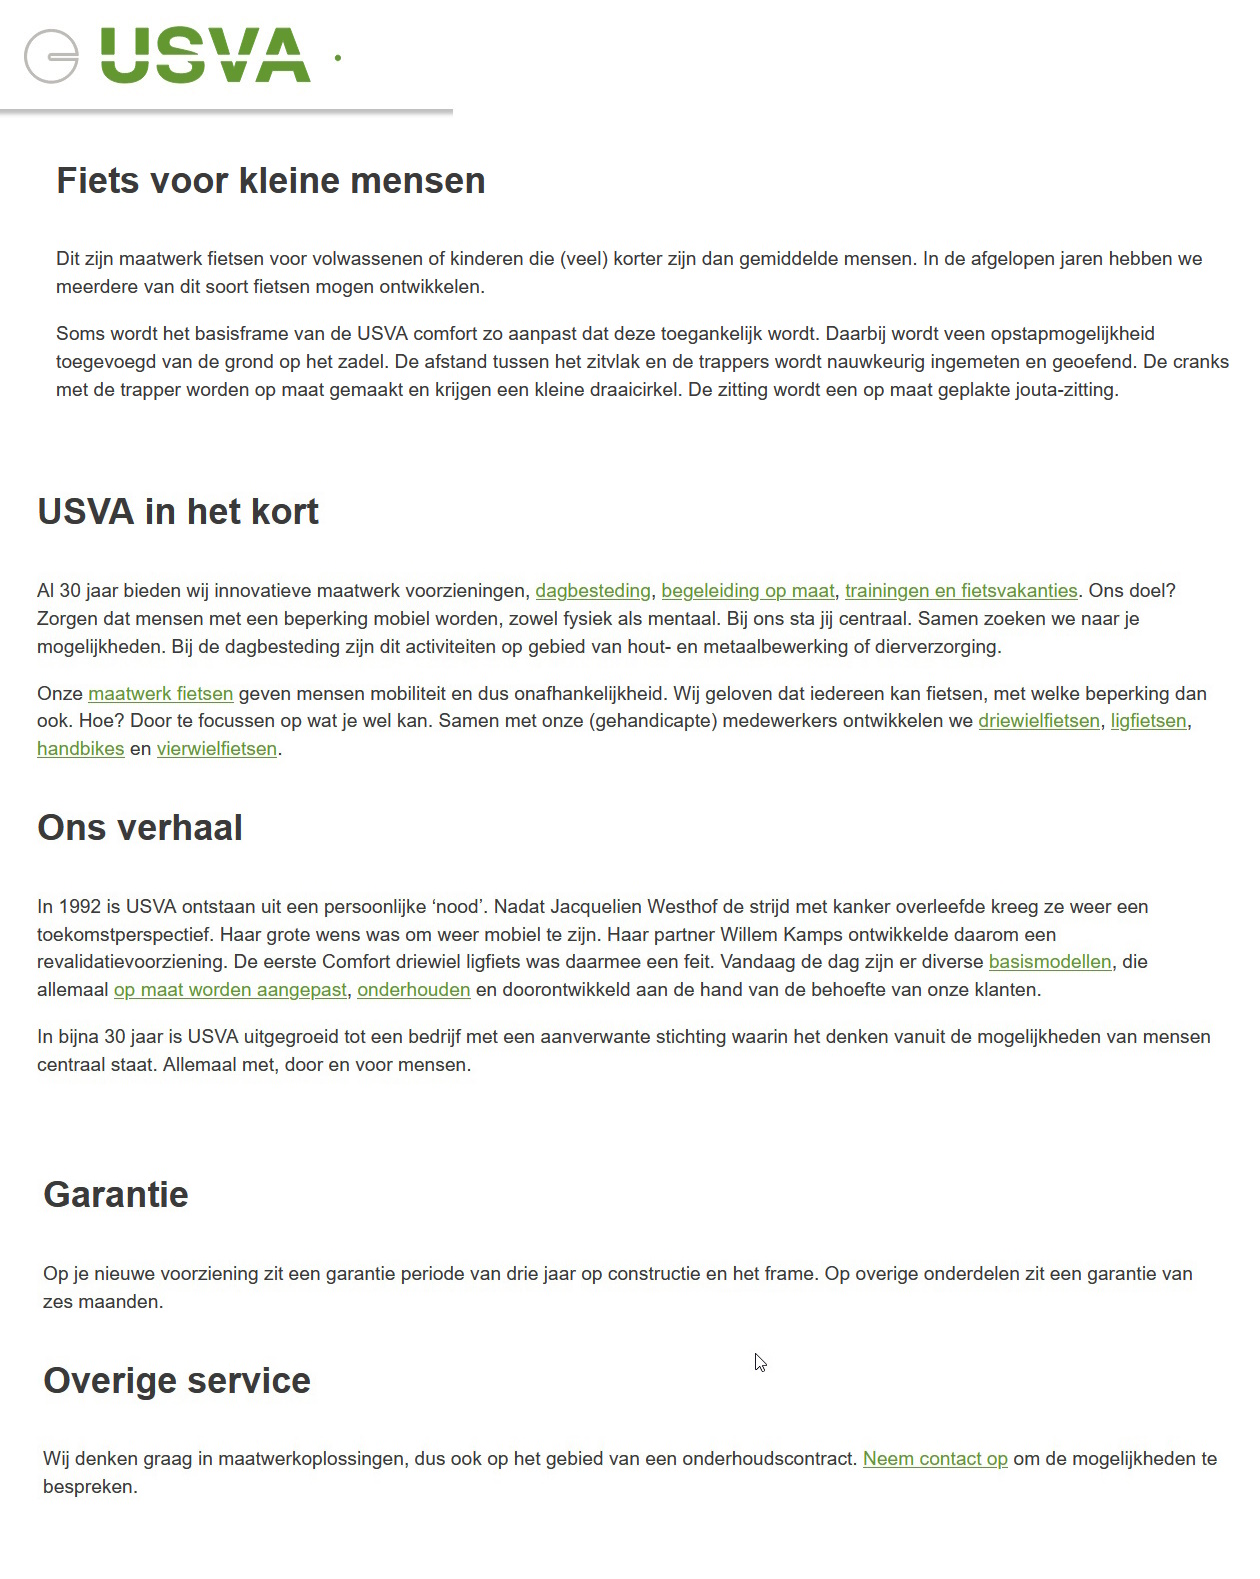 toegevoegd document 2 van USVA Fiets voor kleine mensen (maatwerk)  